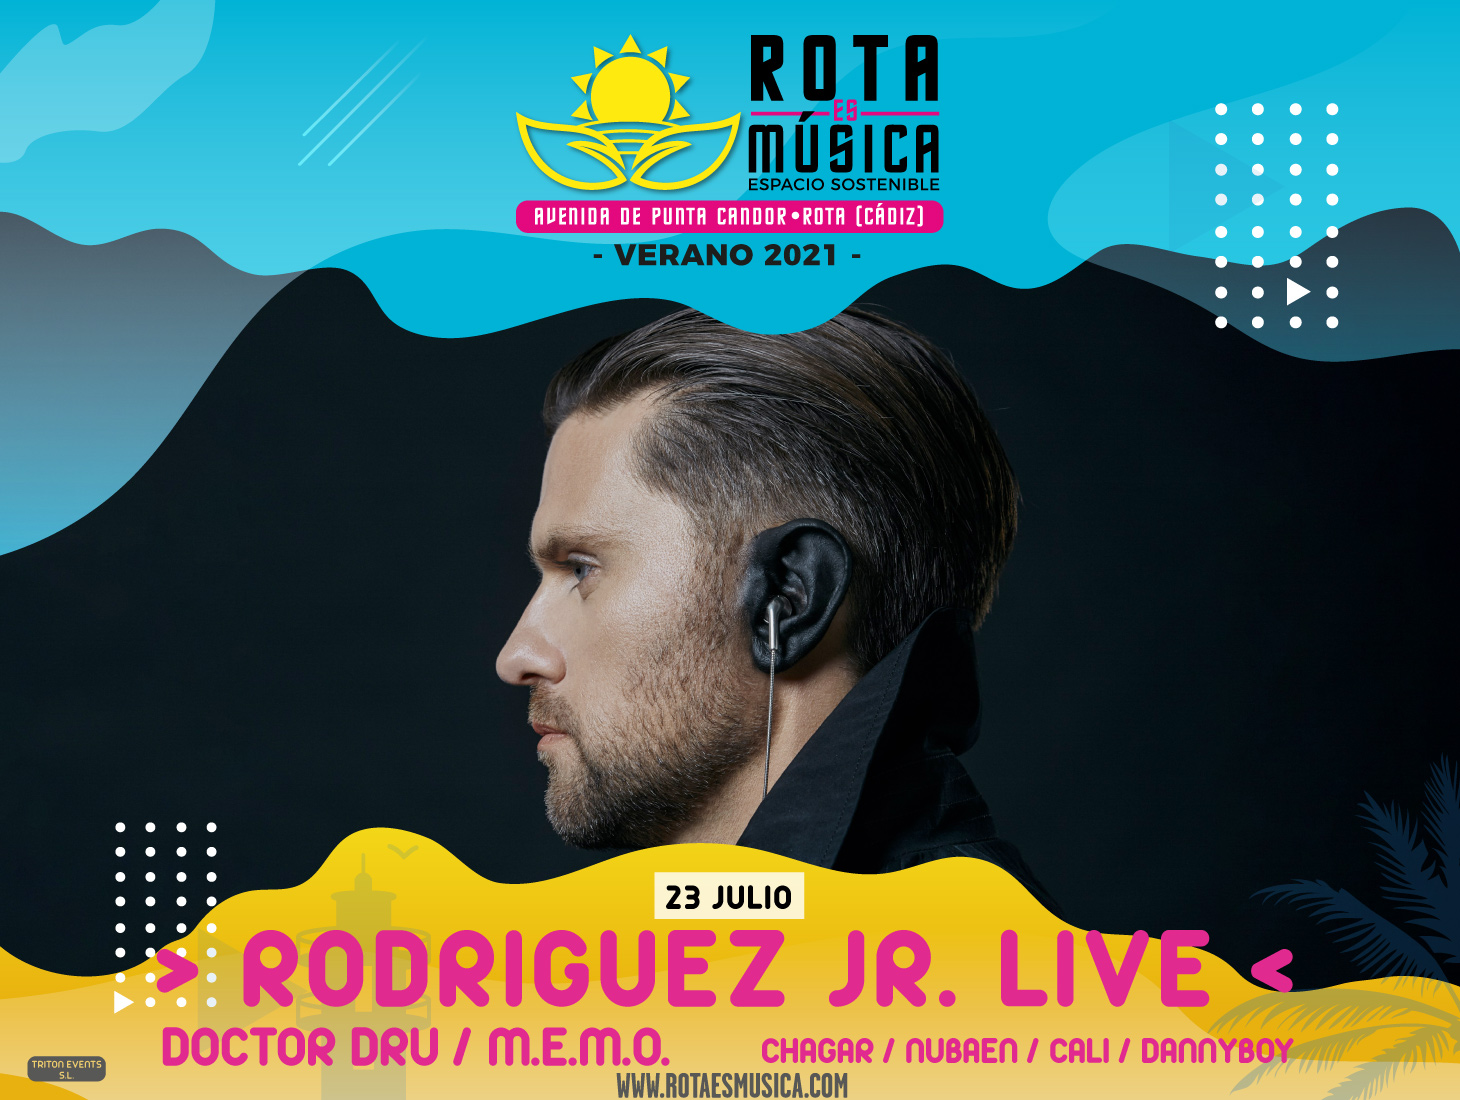 rodriguez-jr-rota-es-musica-60cc584abd962.jpeg